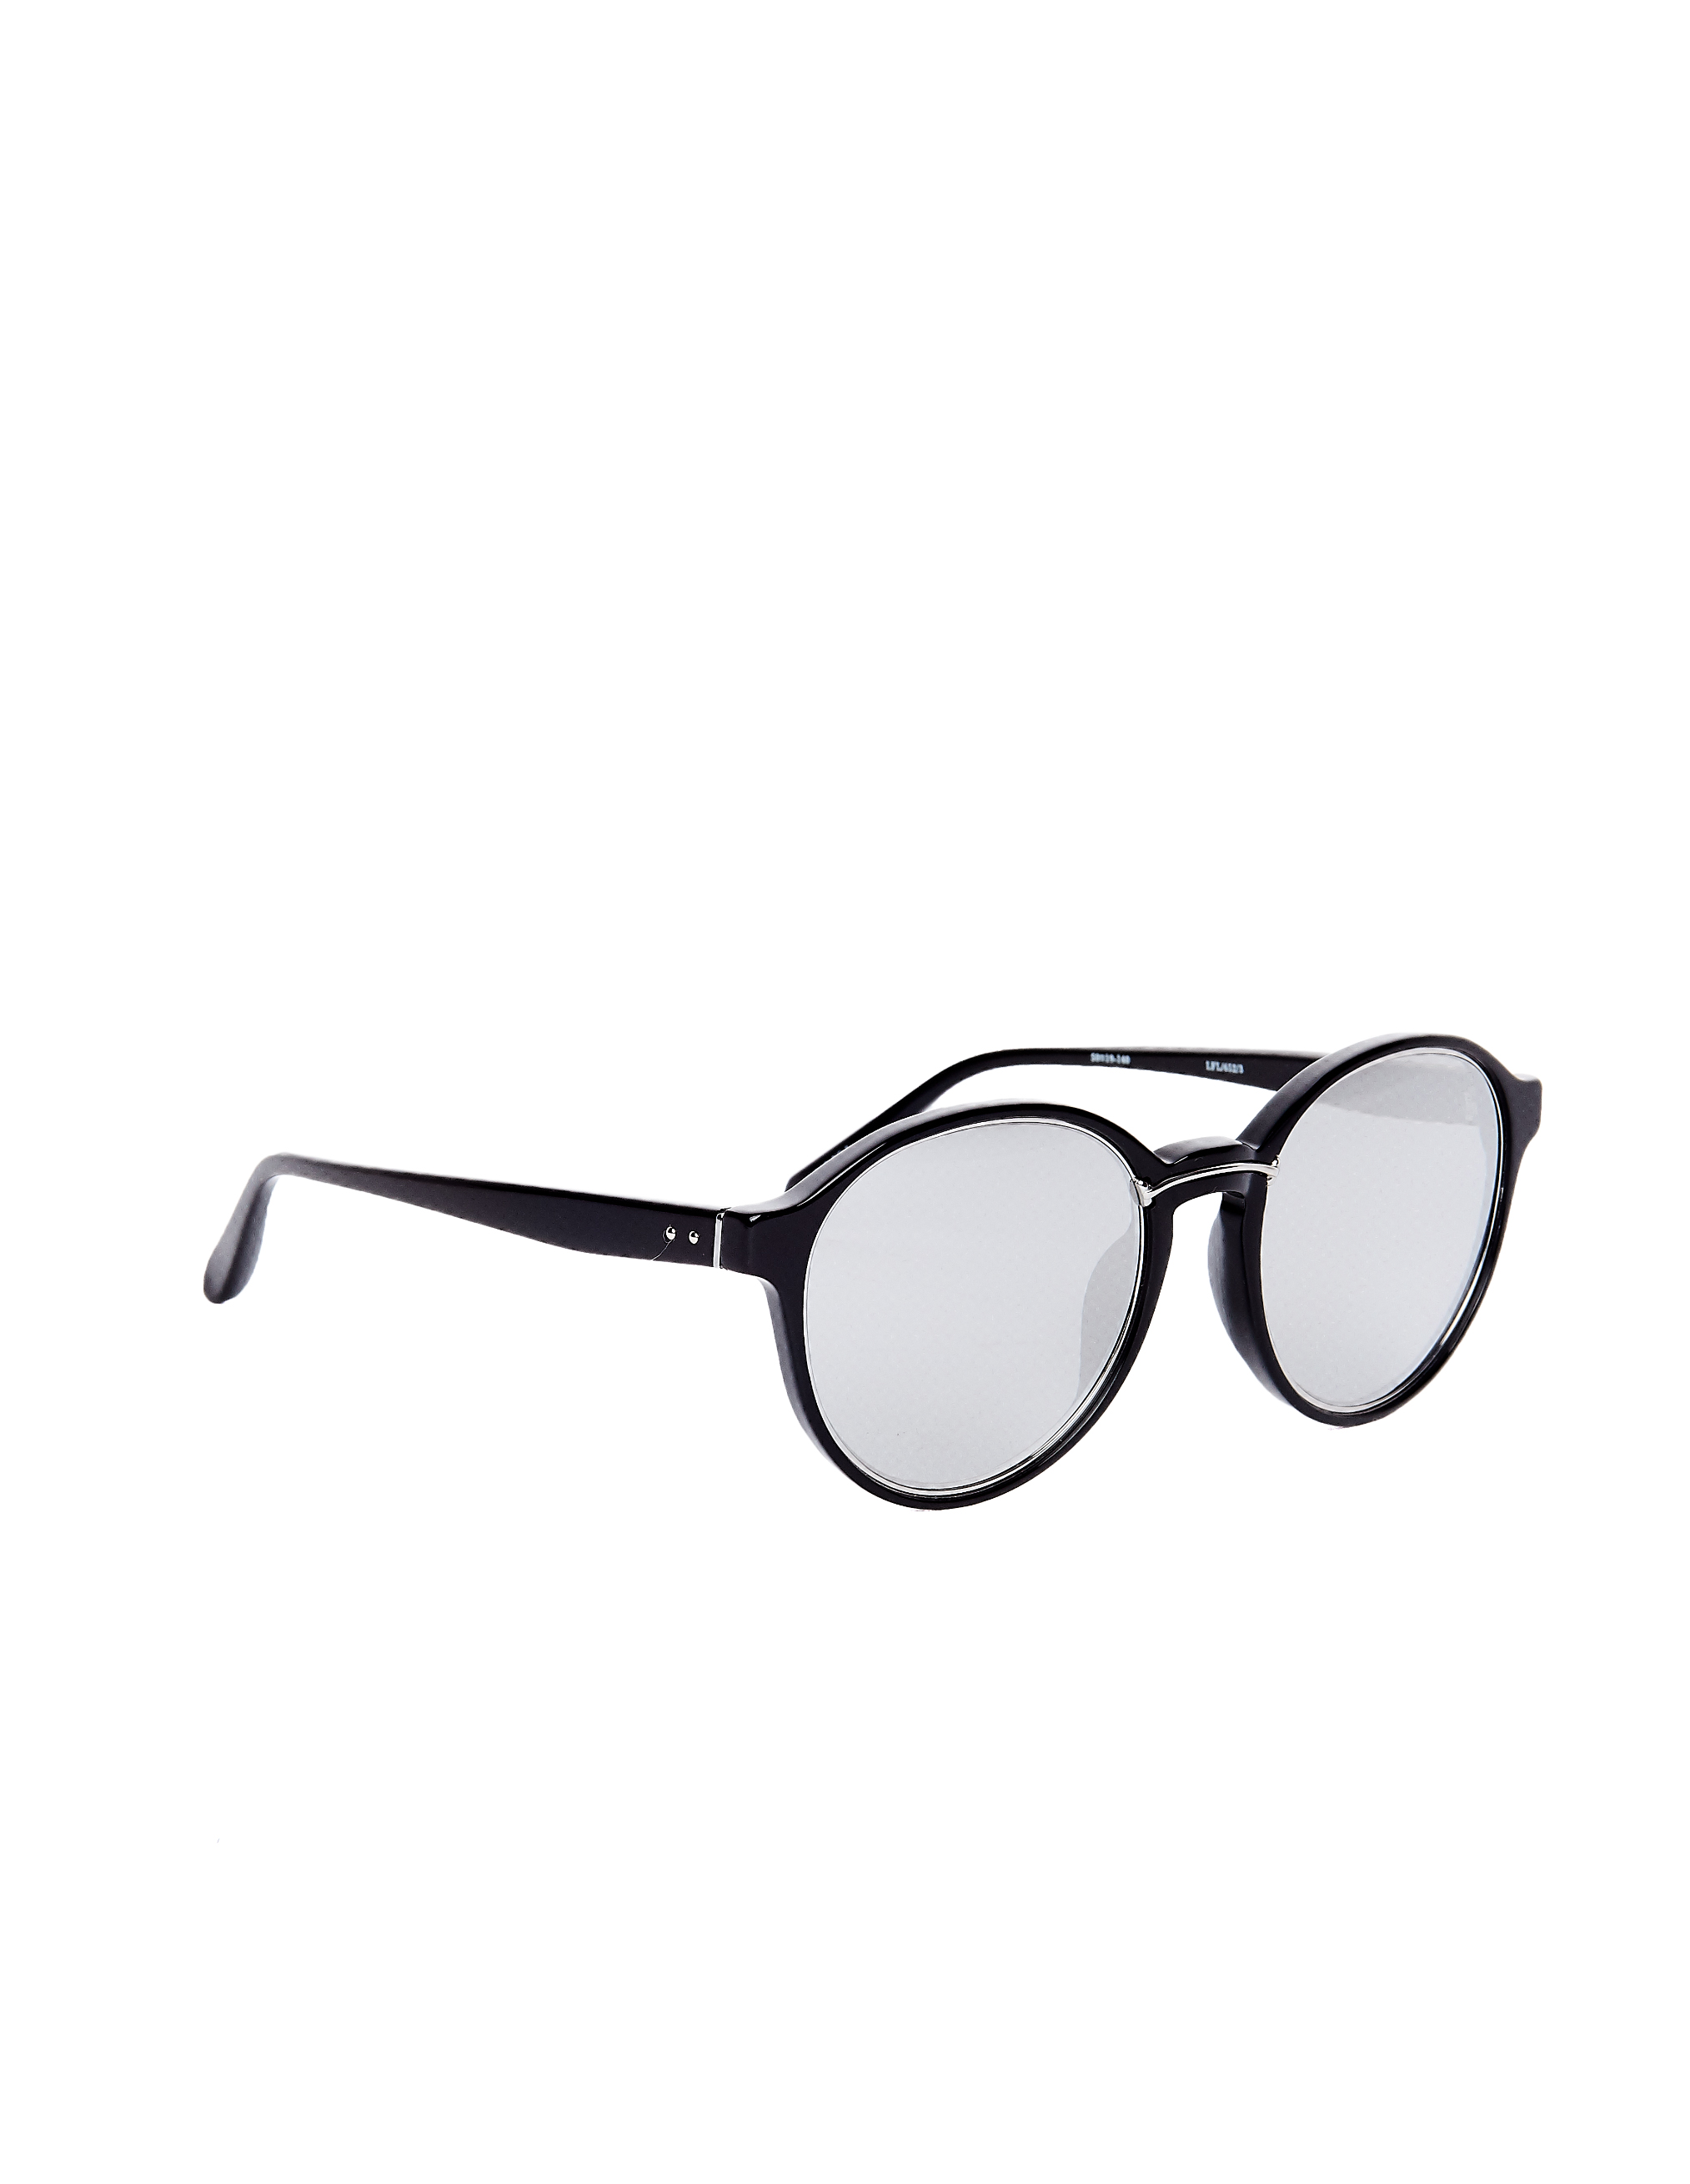 Солнцезащитные очки Luxe Linda Farrow LFL652C3SUN, размер sm